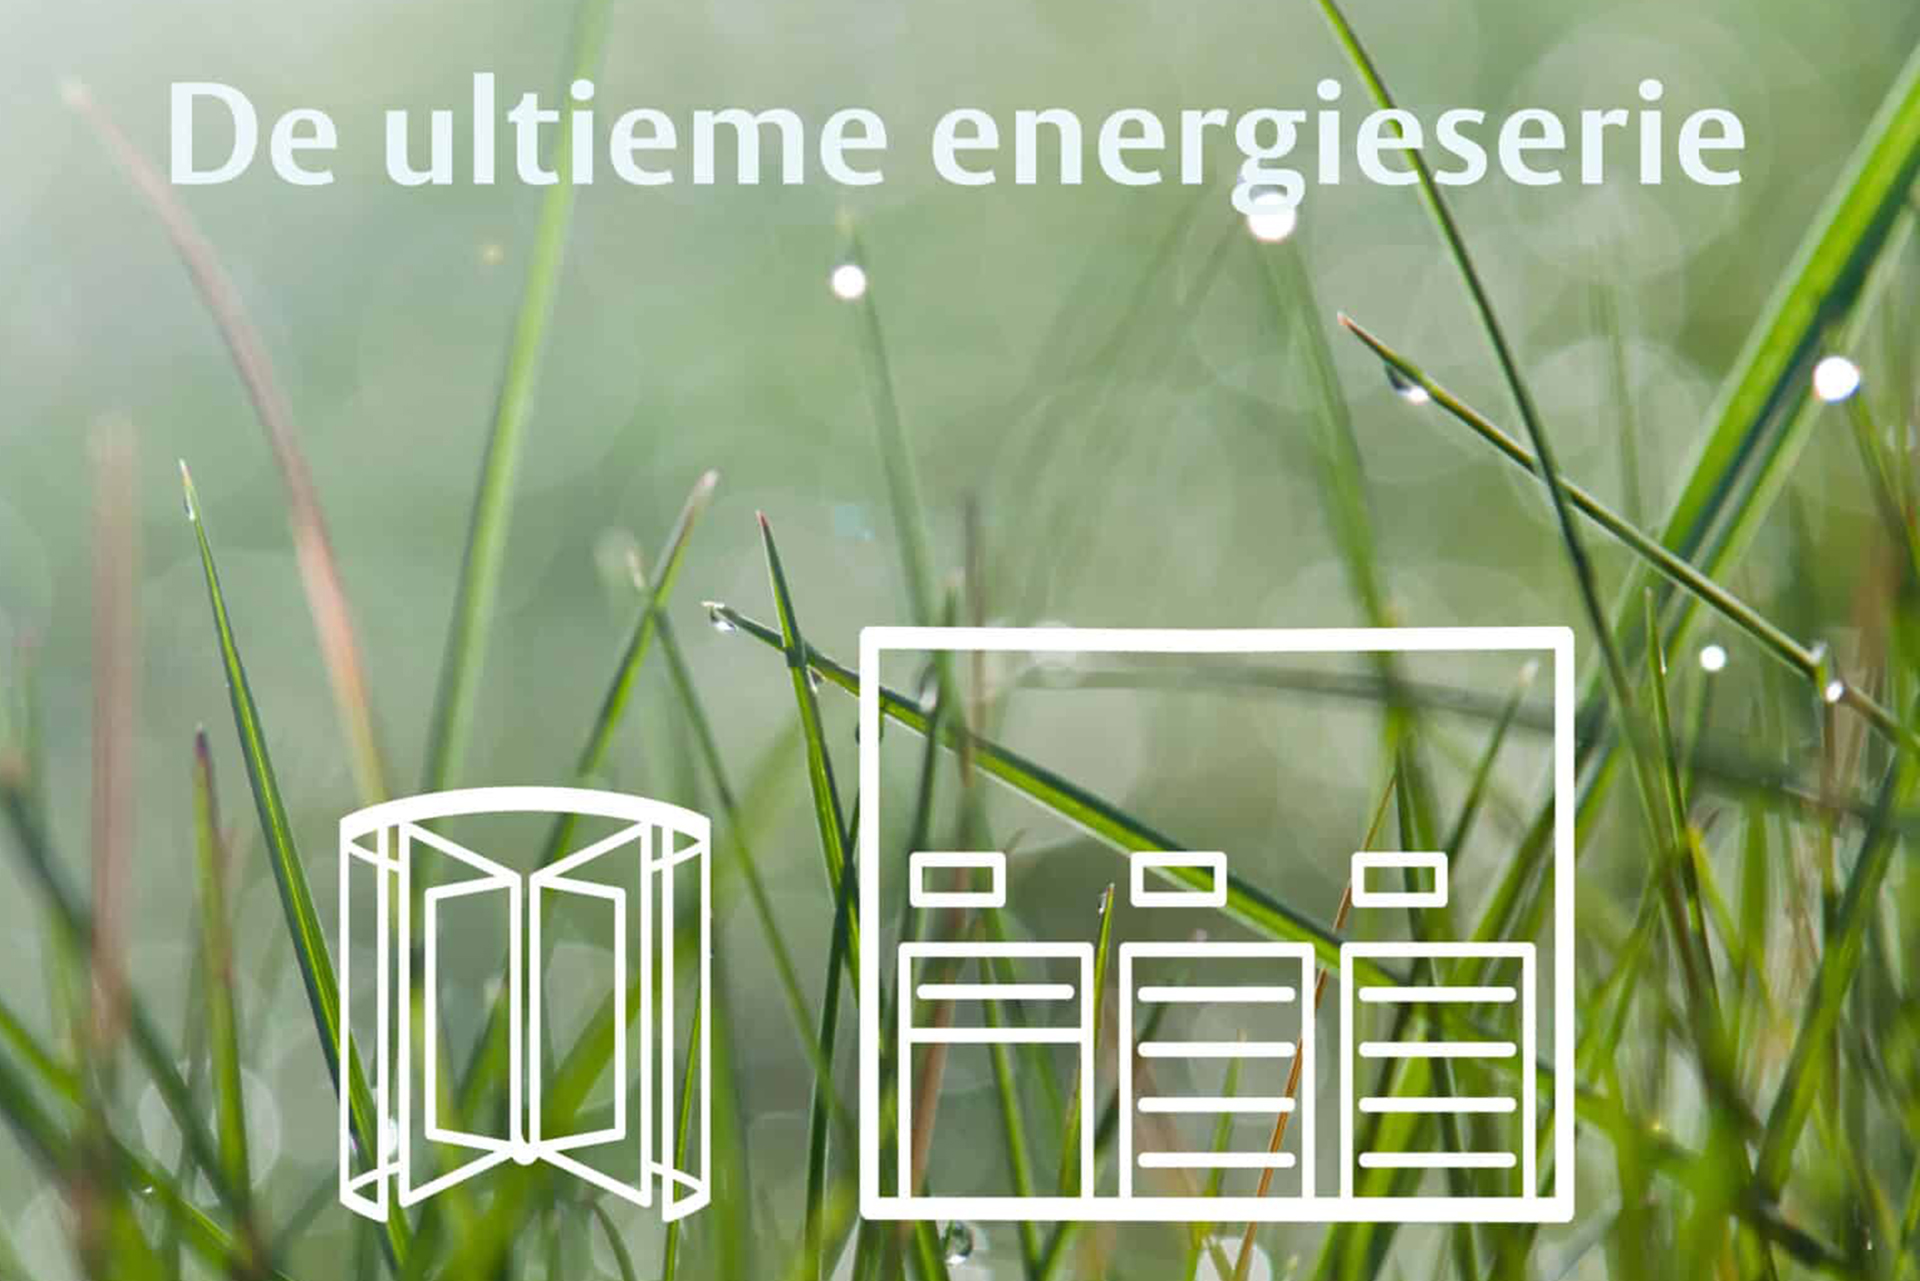 De ultieme energieserie van ASSA ABLOY: acht energiezuinige toegangsoplossingen